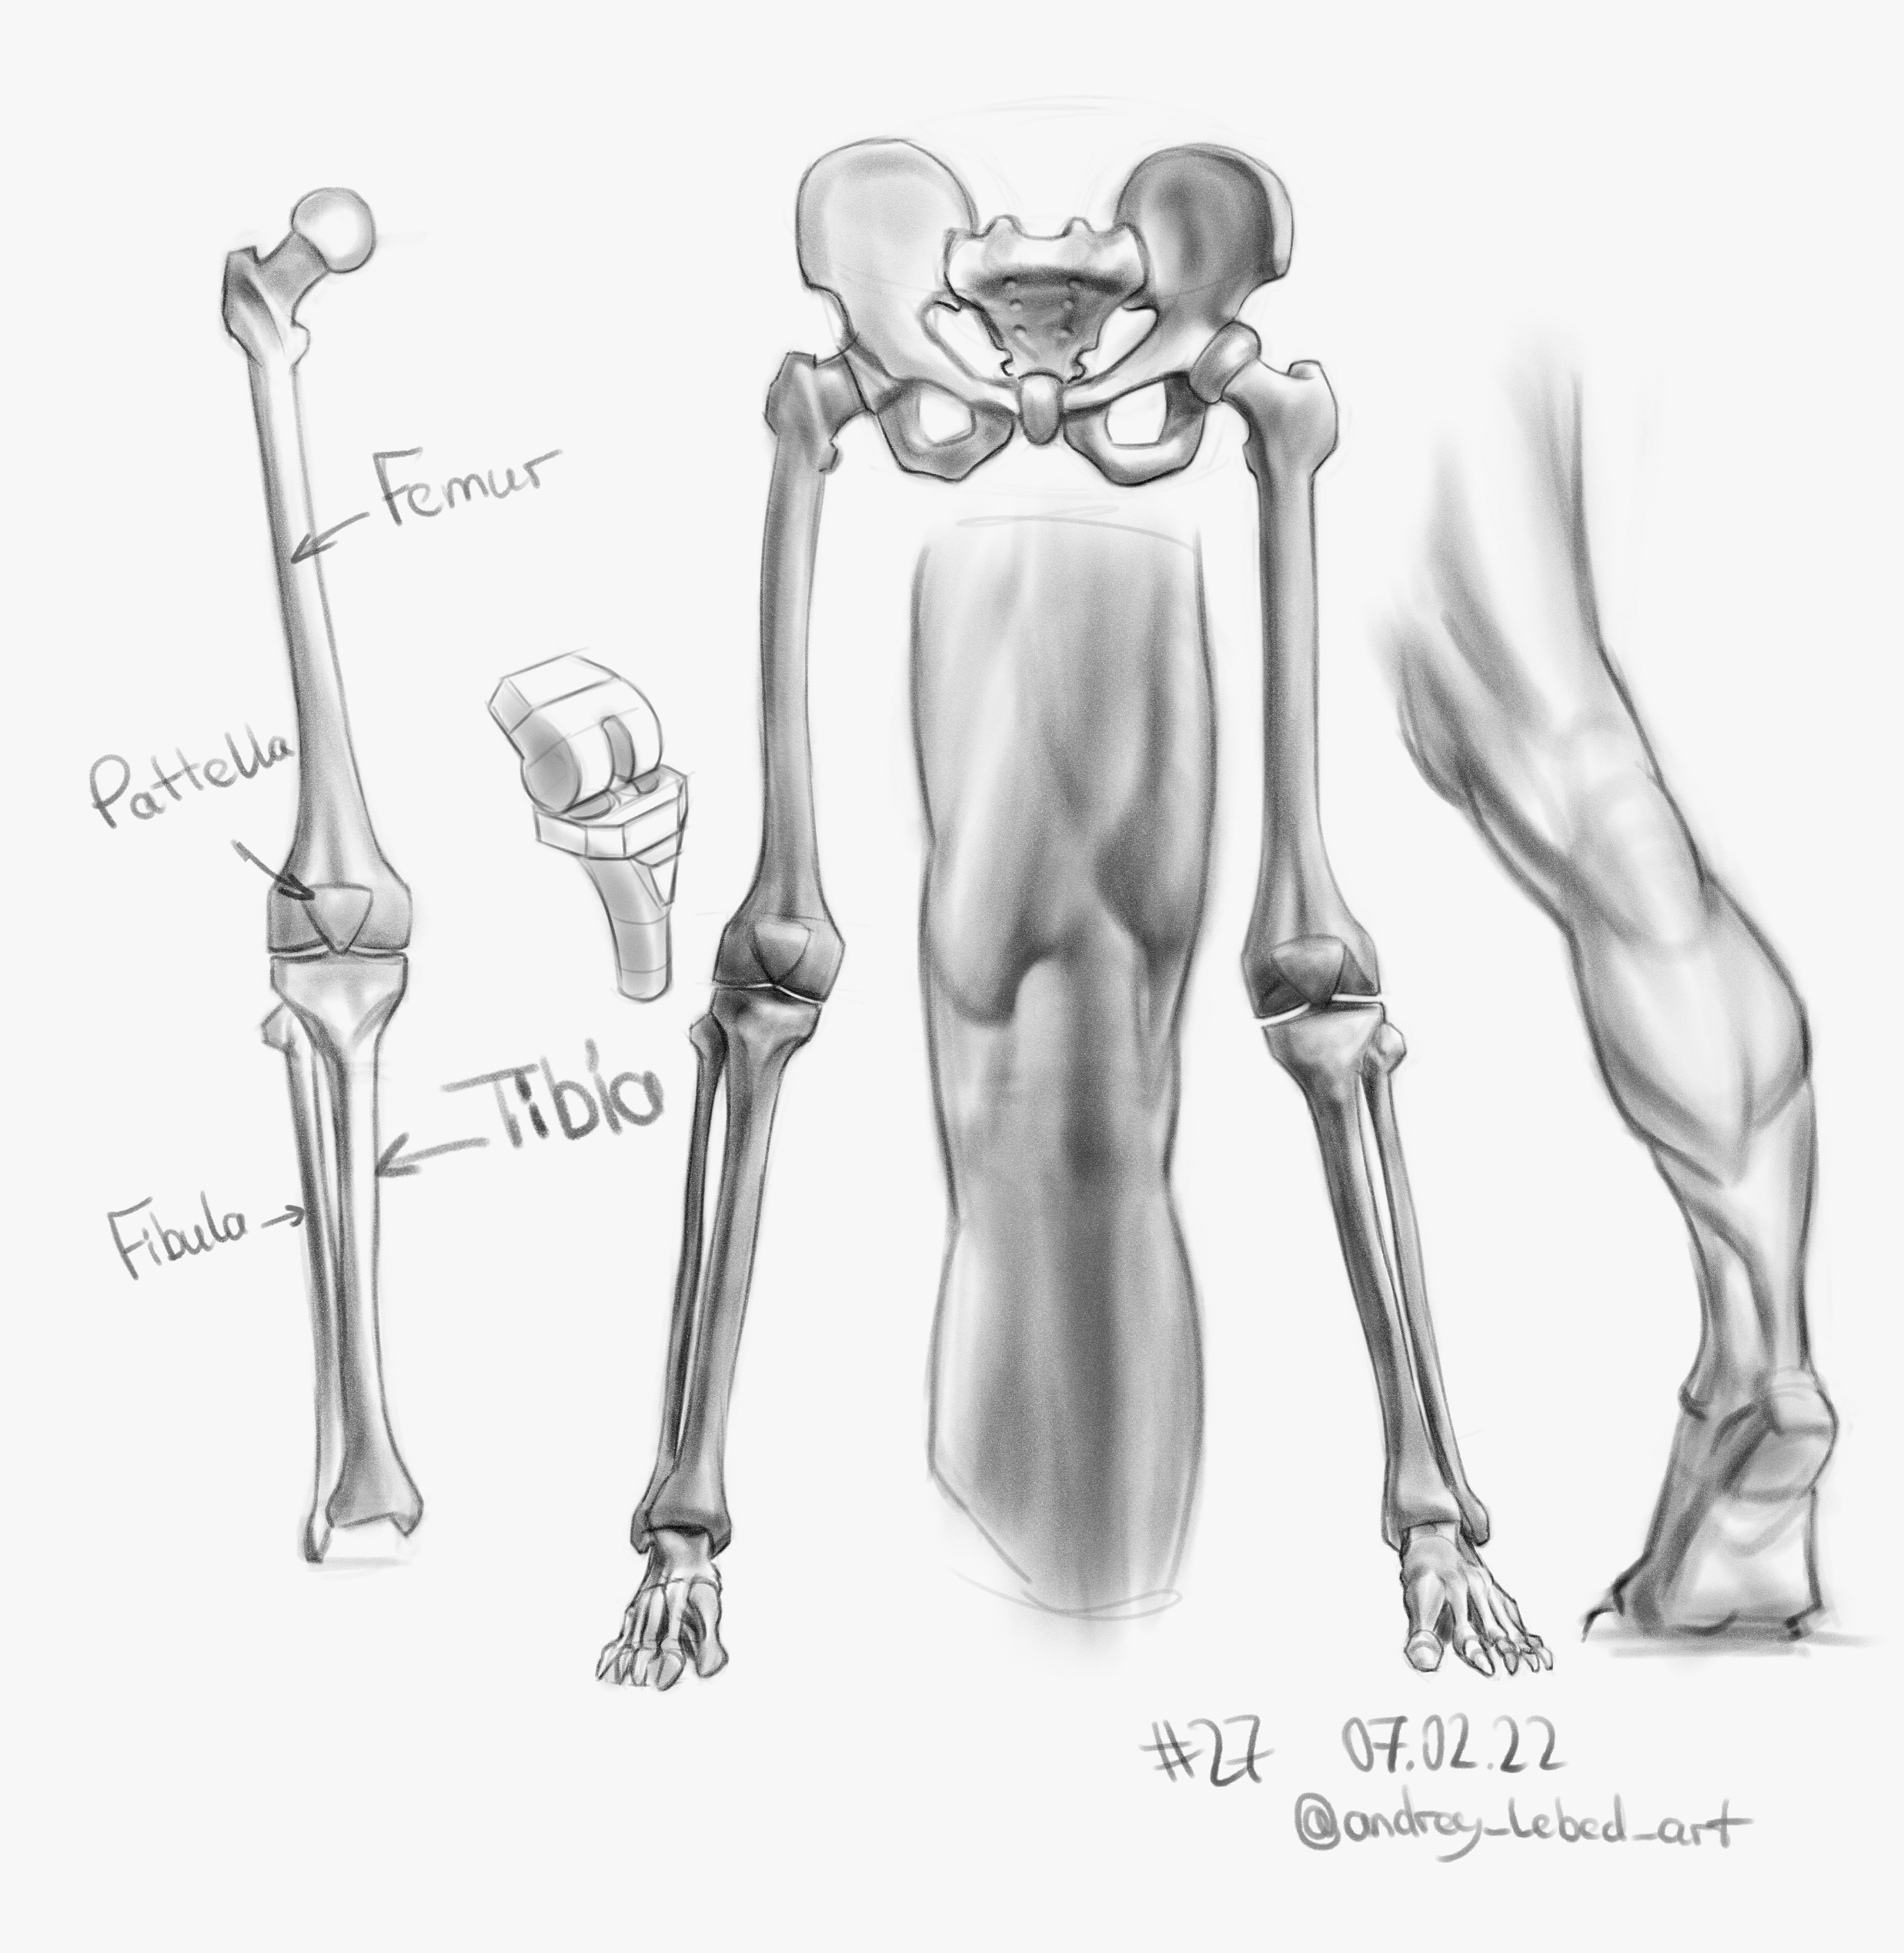  "legs amd bones studies 27 psd.jpg"